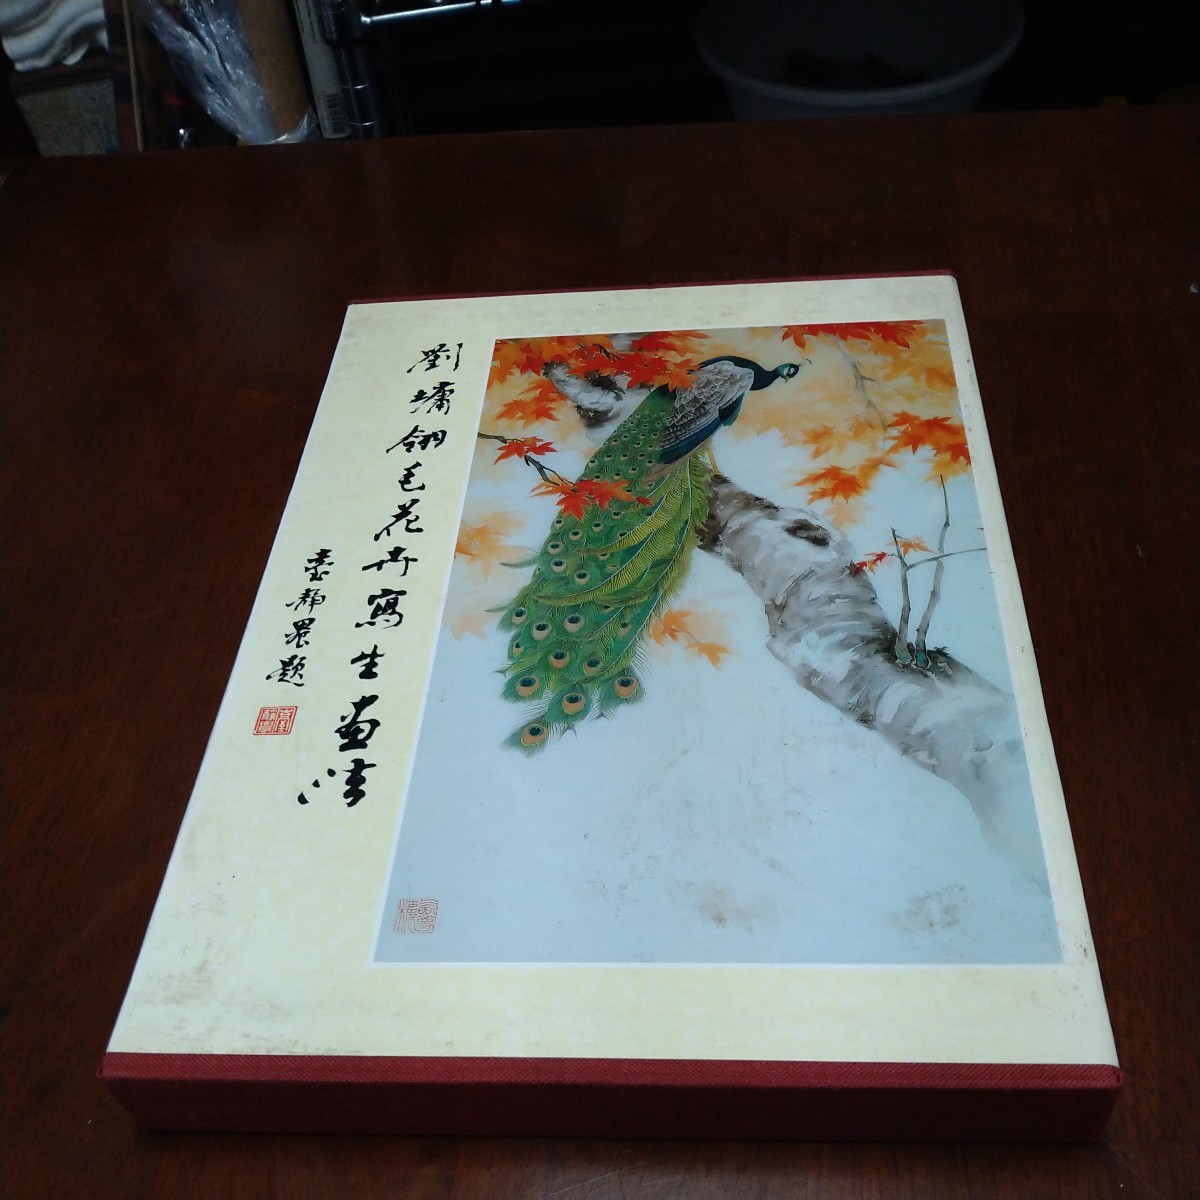 a-1295◆चीनी पक्षी और फूल पेंटिंग ड्राइंग बुक◆कृपया छवि में स्थिति की जांच करें।, चित्रकारी, कला पुस्तक, संग्रह, कला पुस्तक